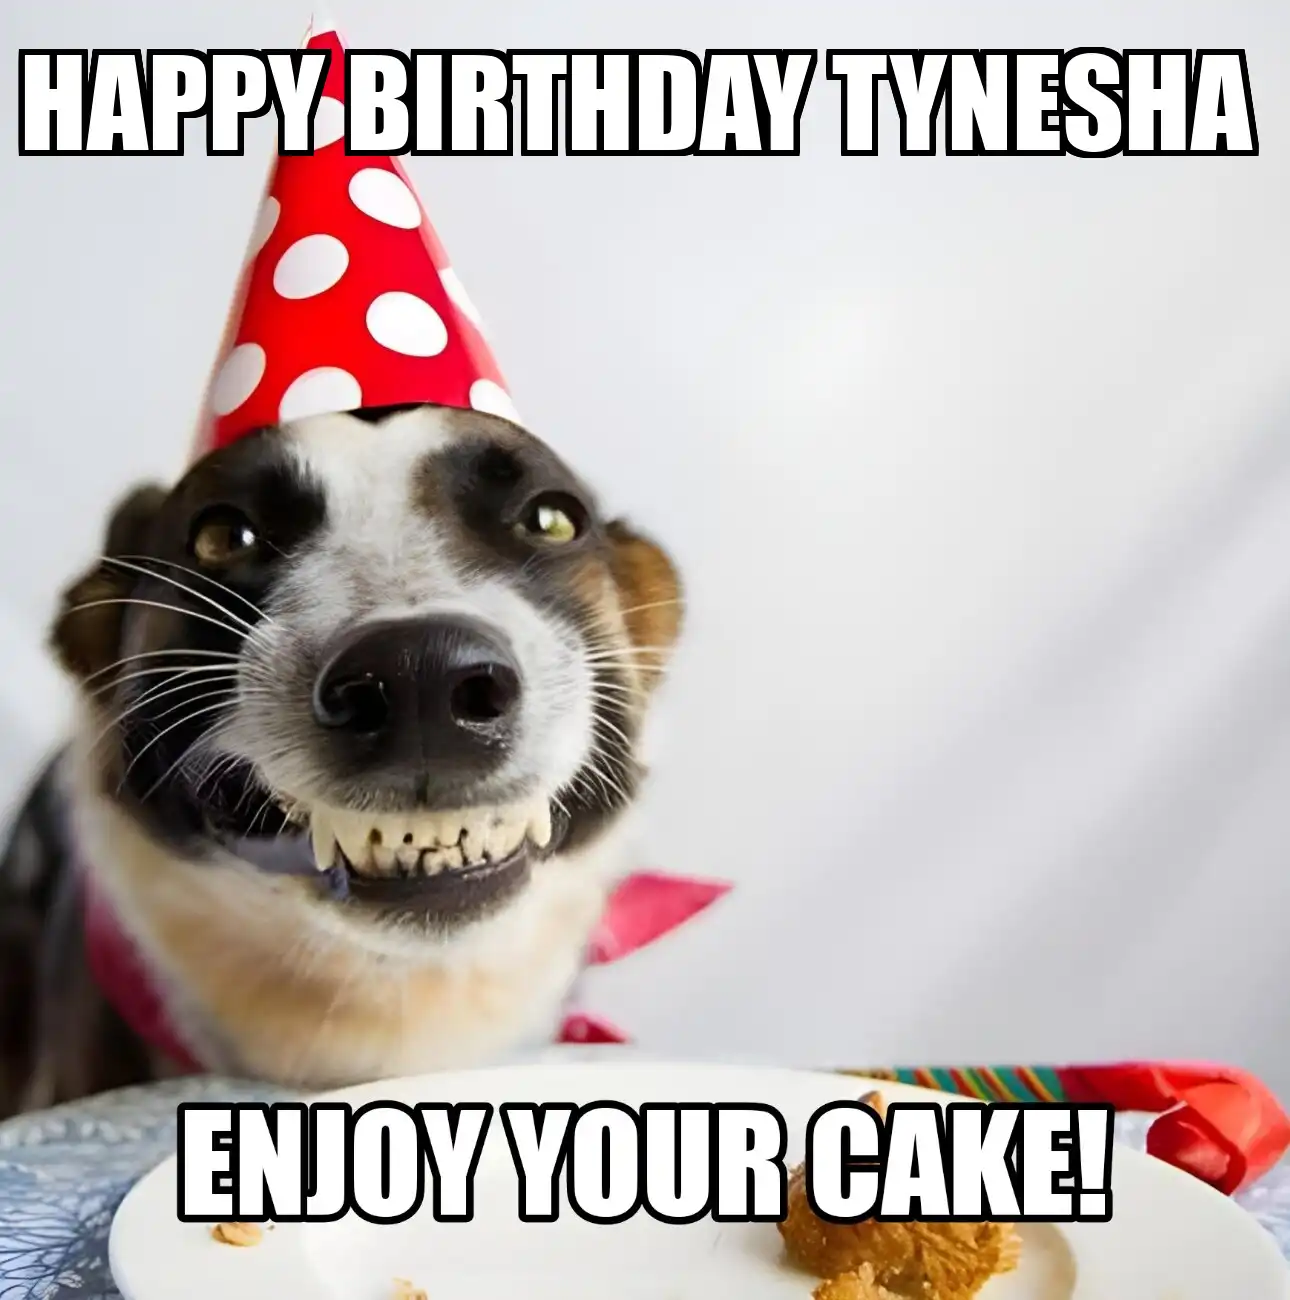 Happy Birthday Tynesha Enjoy Your Cake Dog Meme